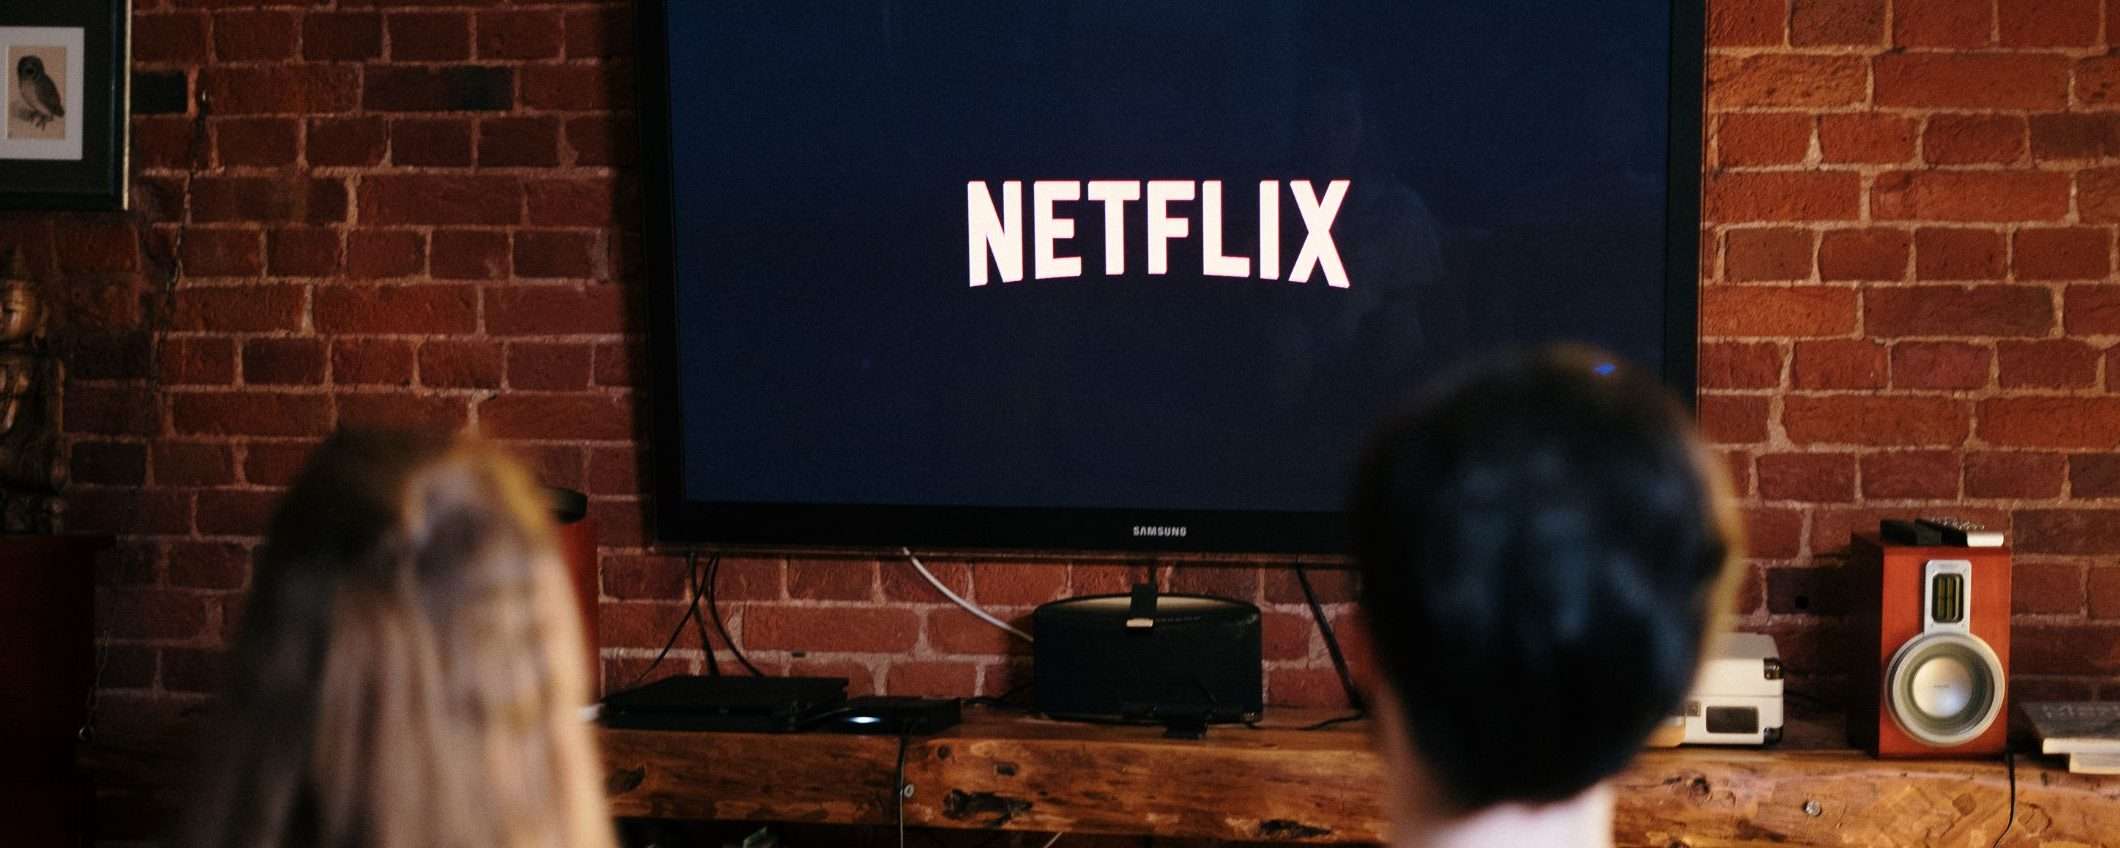 Netflix, quanto potrebbe costare il nuovo abbonamento con pubblicità